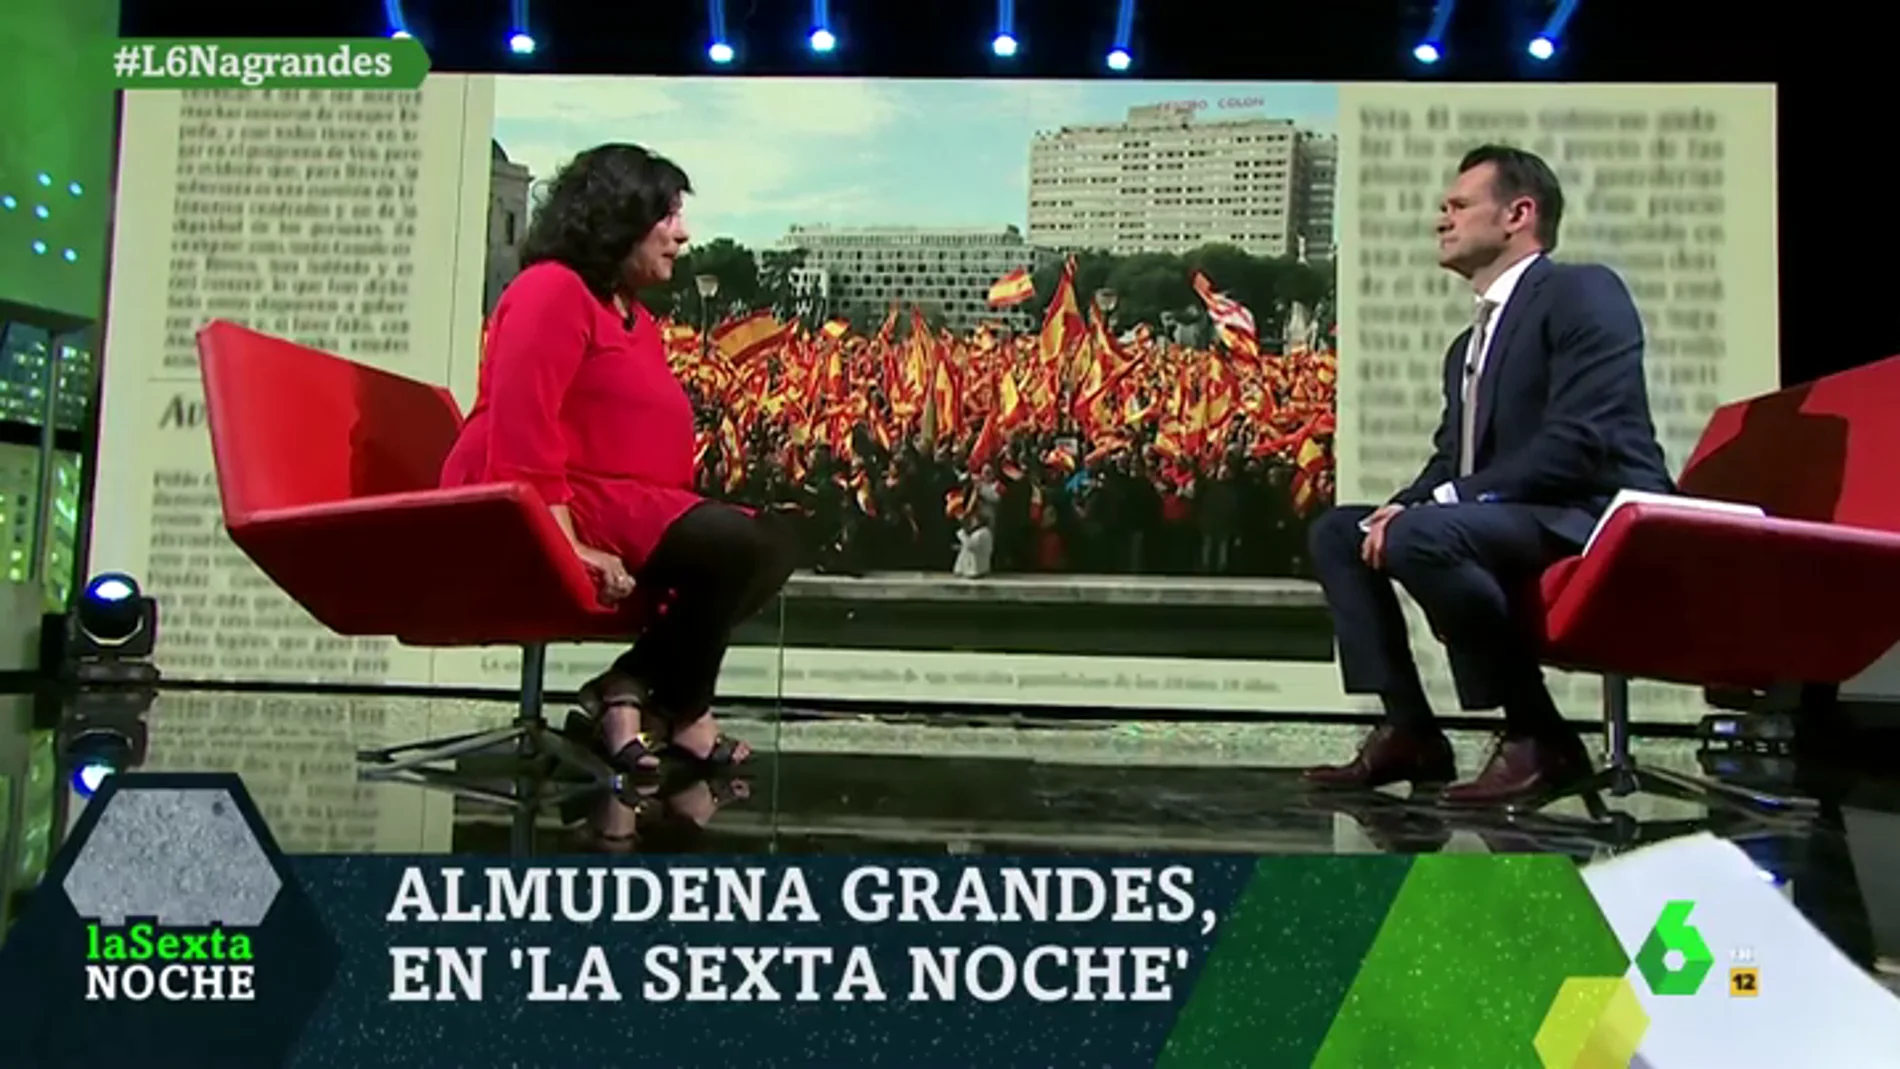 Almudena Grandes: "El patriotismo no es ponerse una pulsera con la bandera, es desear que España no haga el ridículo"